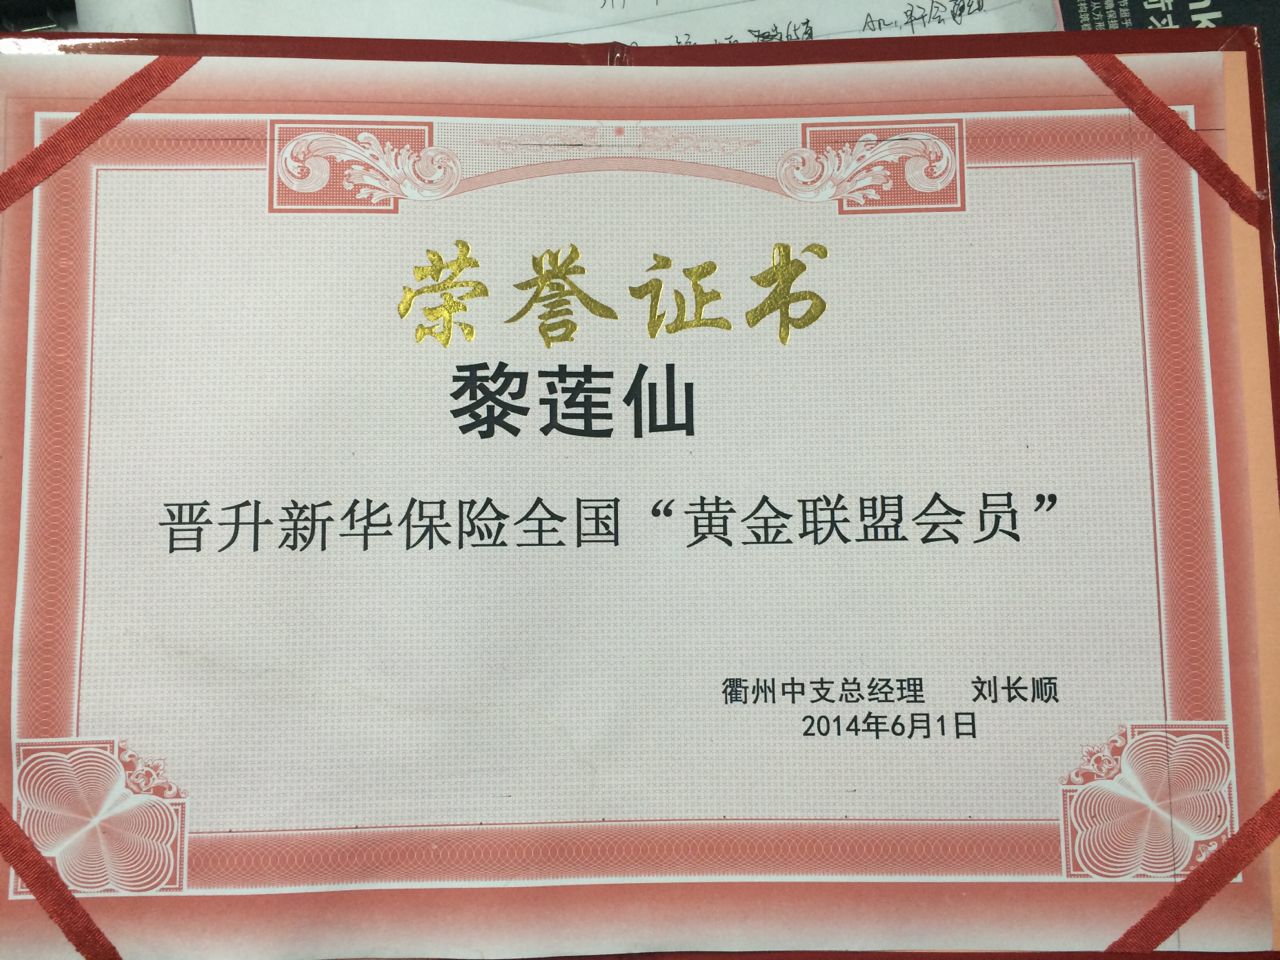 证书名称:晋升"黄金联盟会员"发证机关:新华保险衢州中支